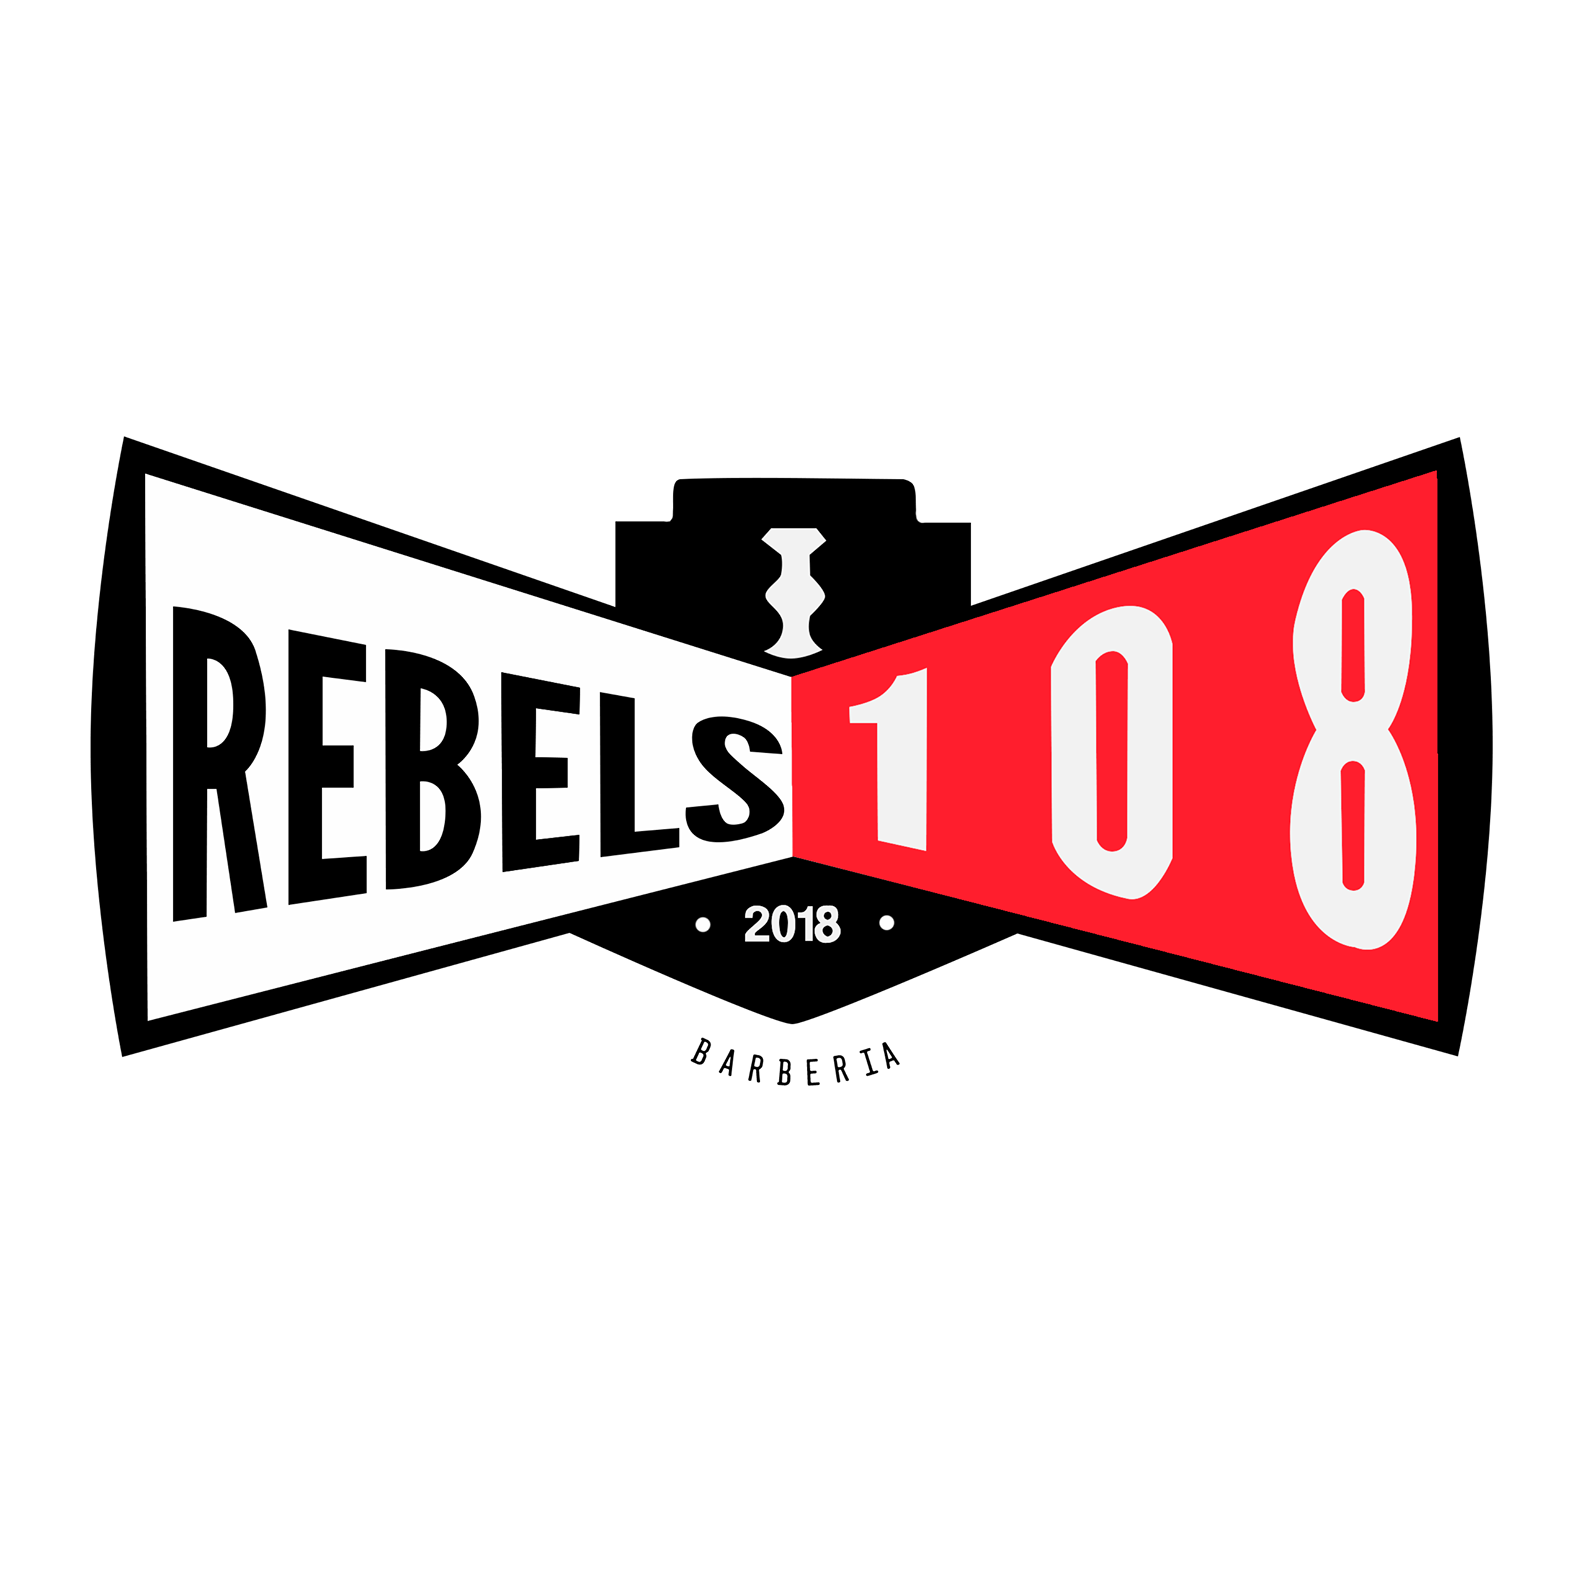 Rebels108